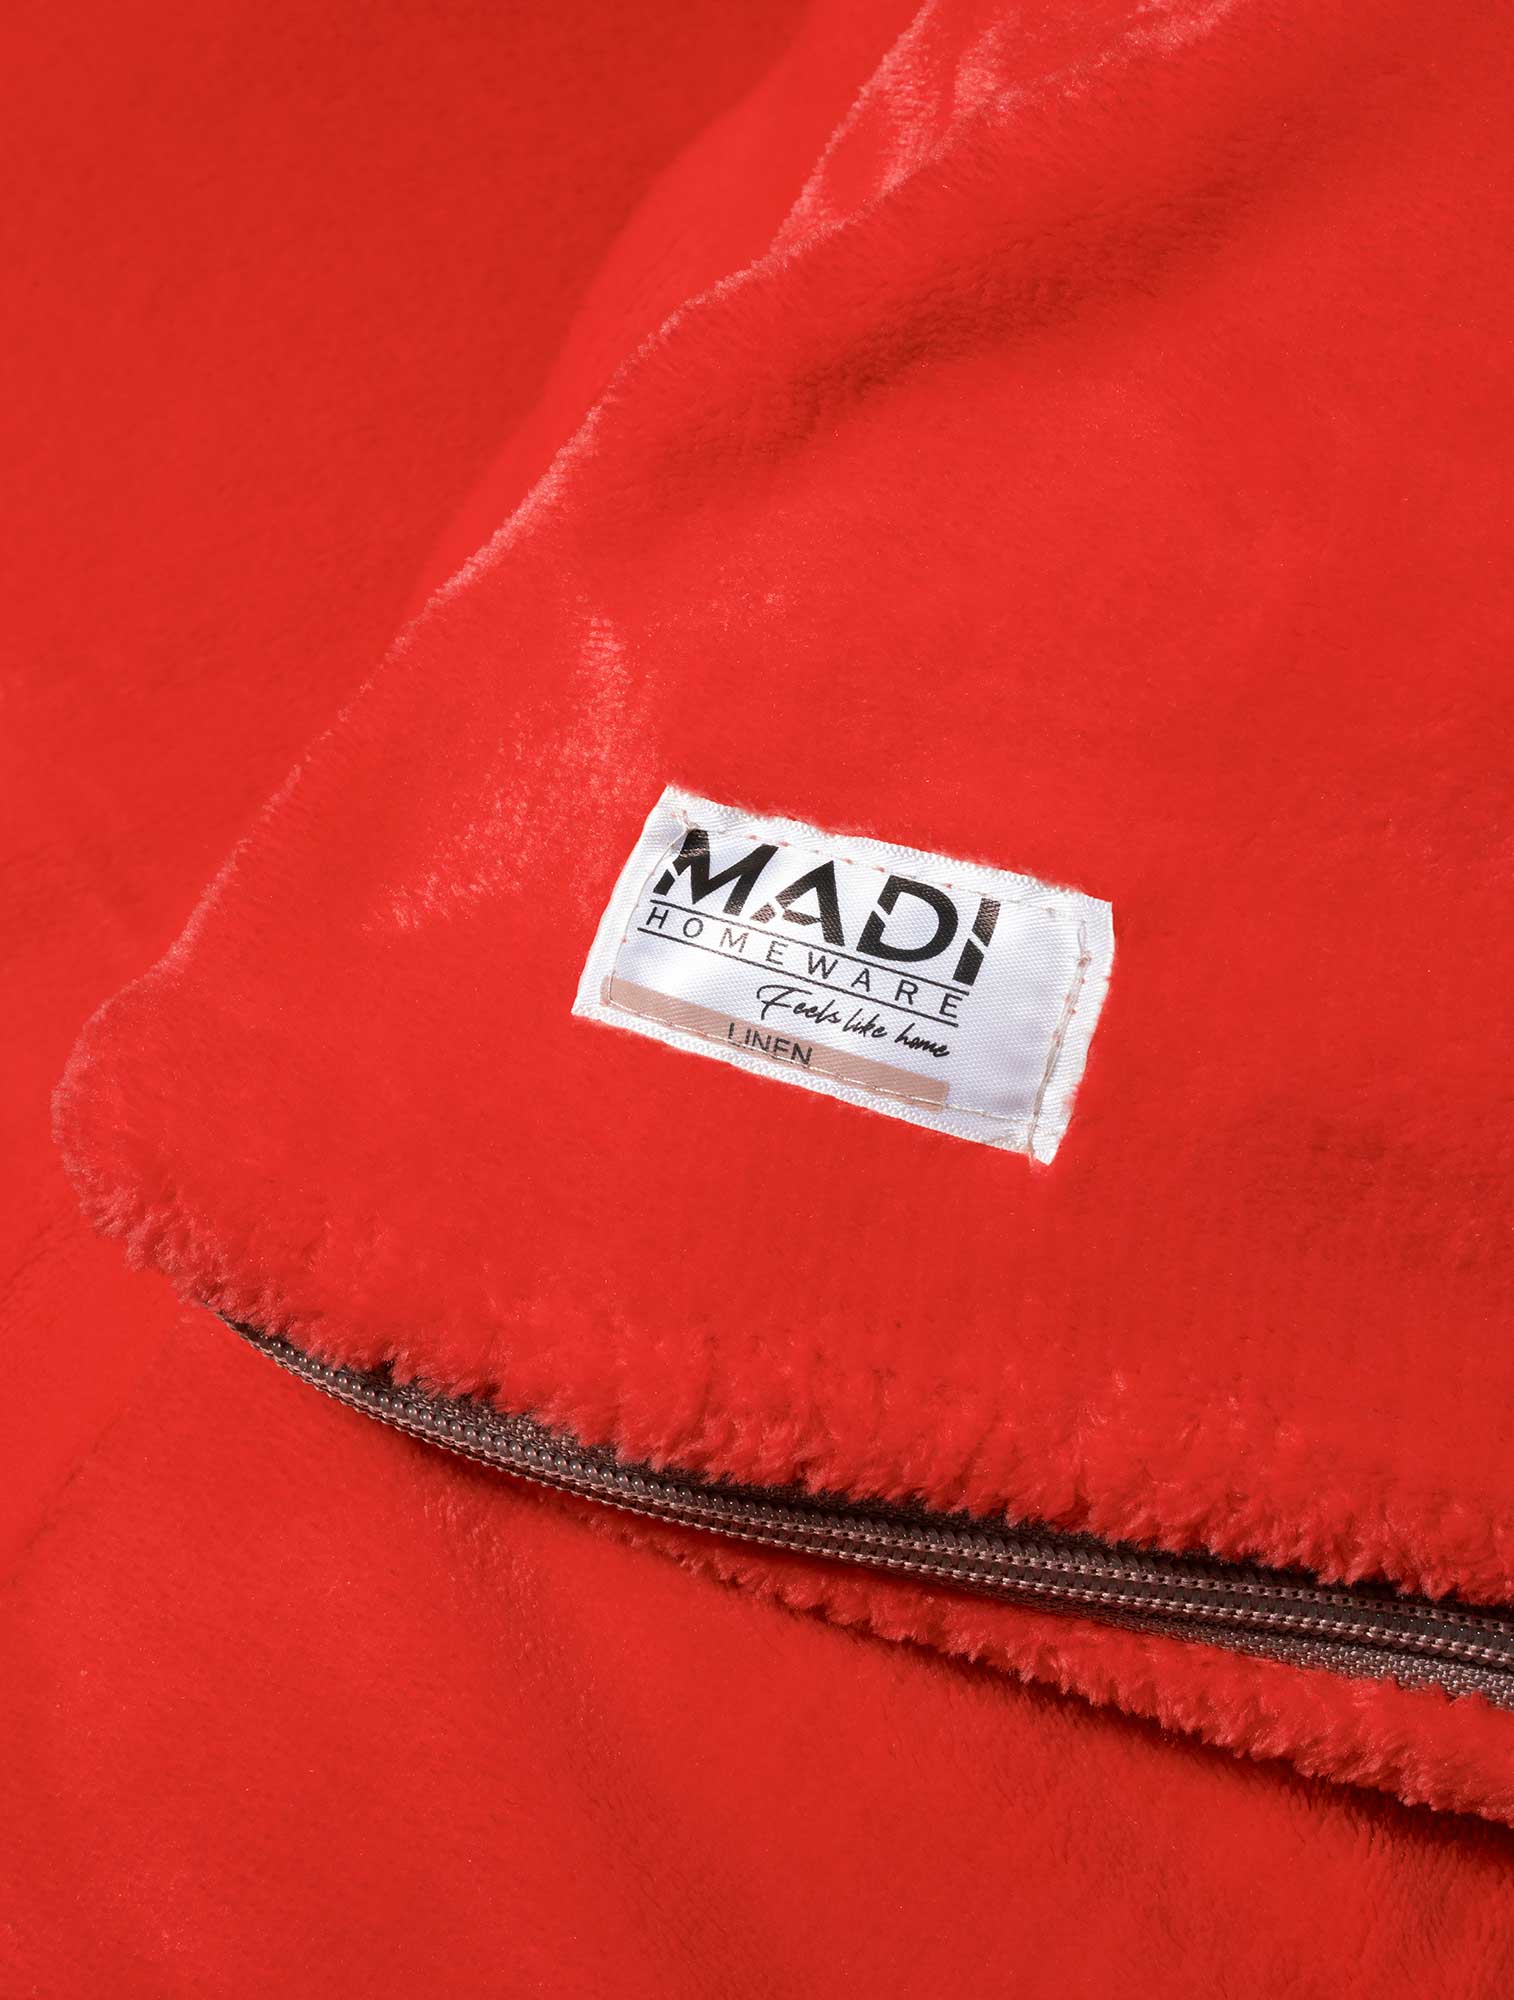 Κουβέρτα DULL RED από την εταιρεία Madi